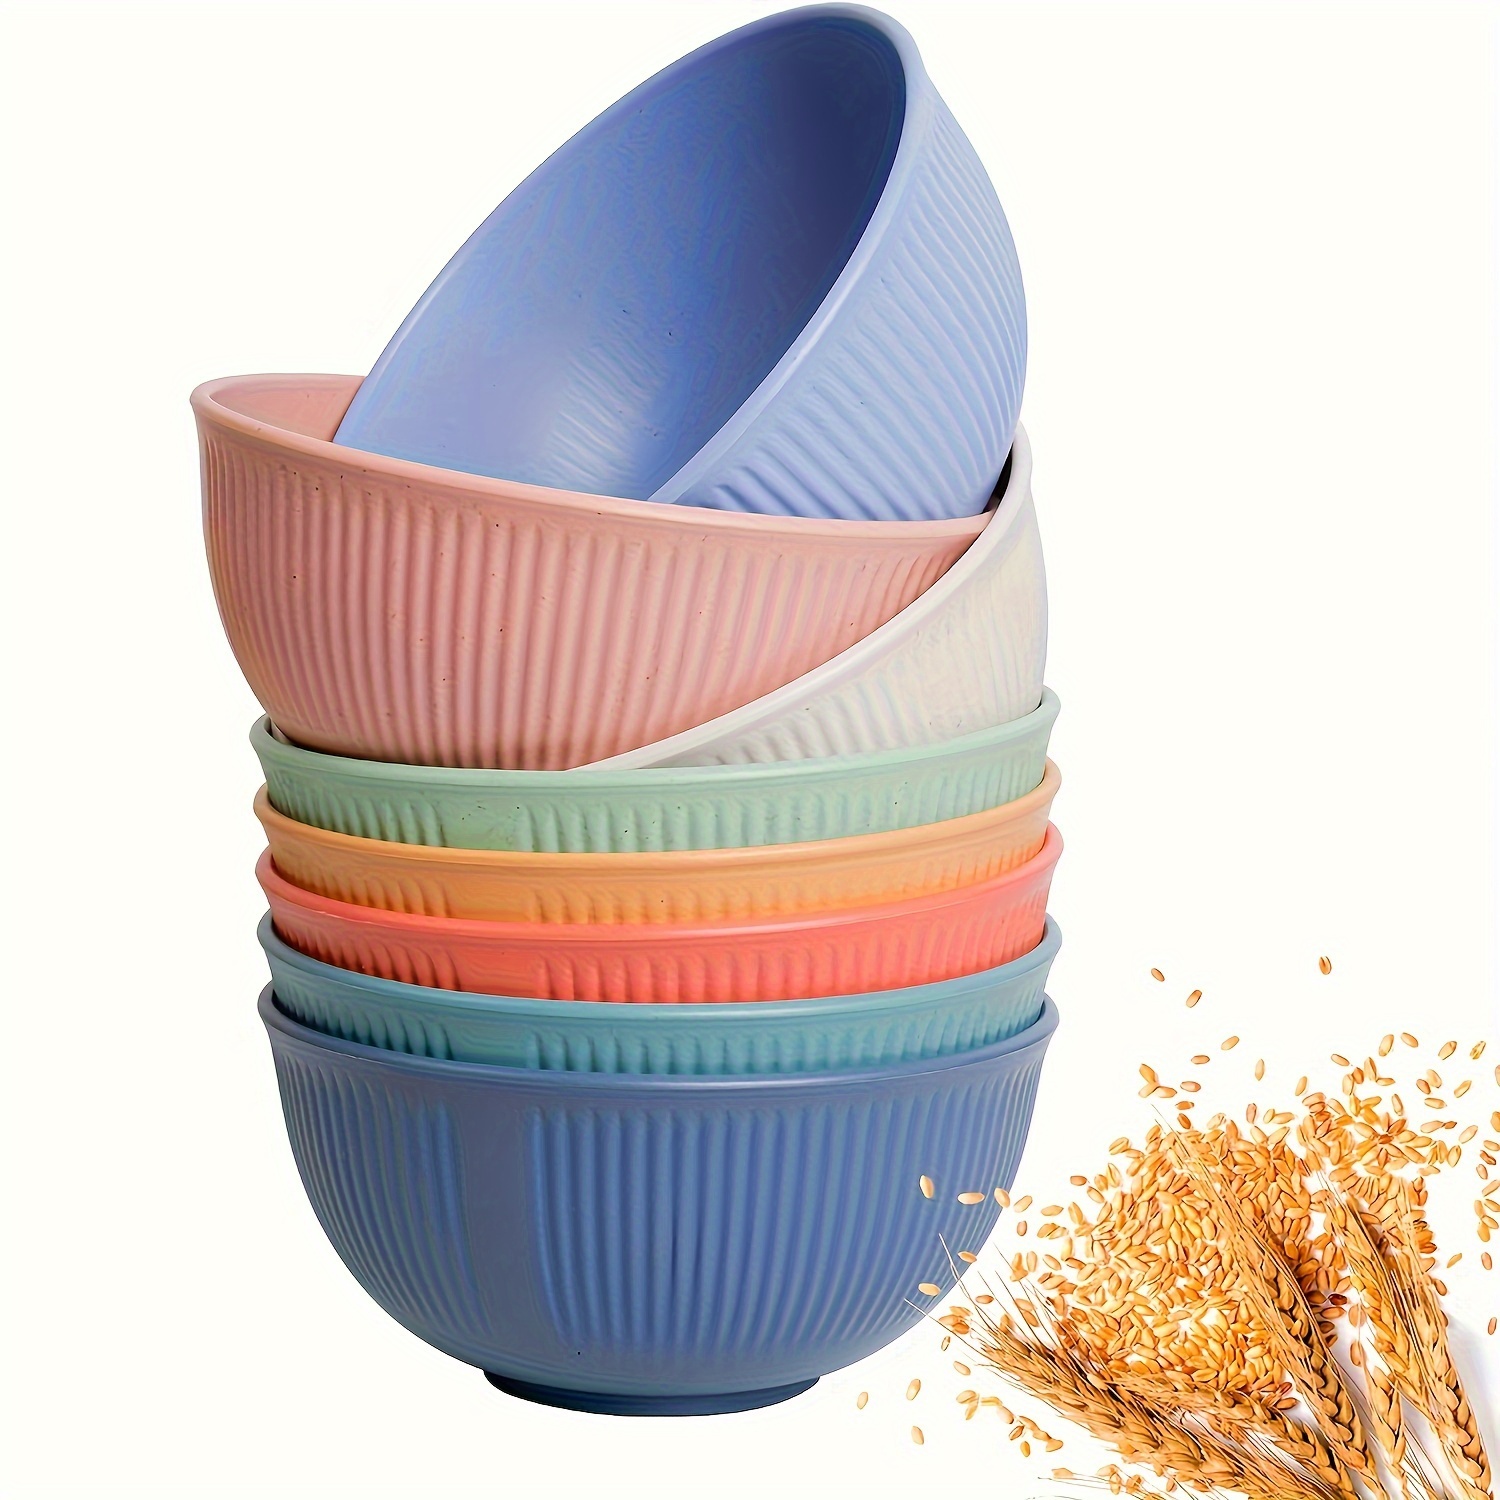 12pcs Plastic Bowls Set, 3 Sizes 14/20/25oz Unbreakable Reusable Light  Weight Bowl For Cereal, Noodle, Soup, Pasta, Ramen, Popcorn, Ice Cream,  Fruit